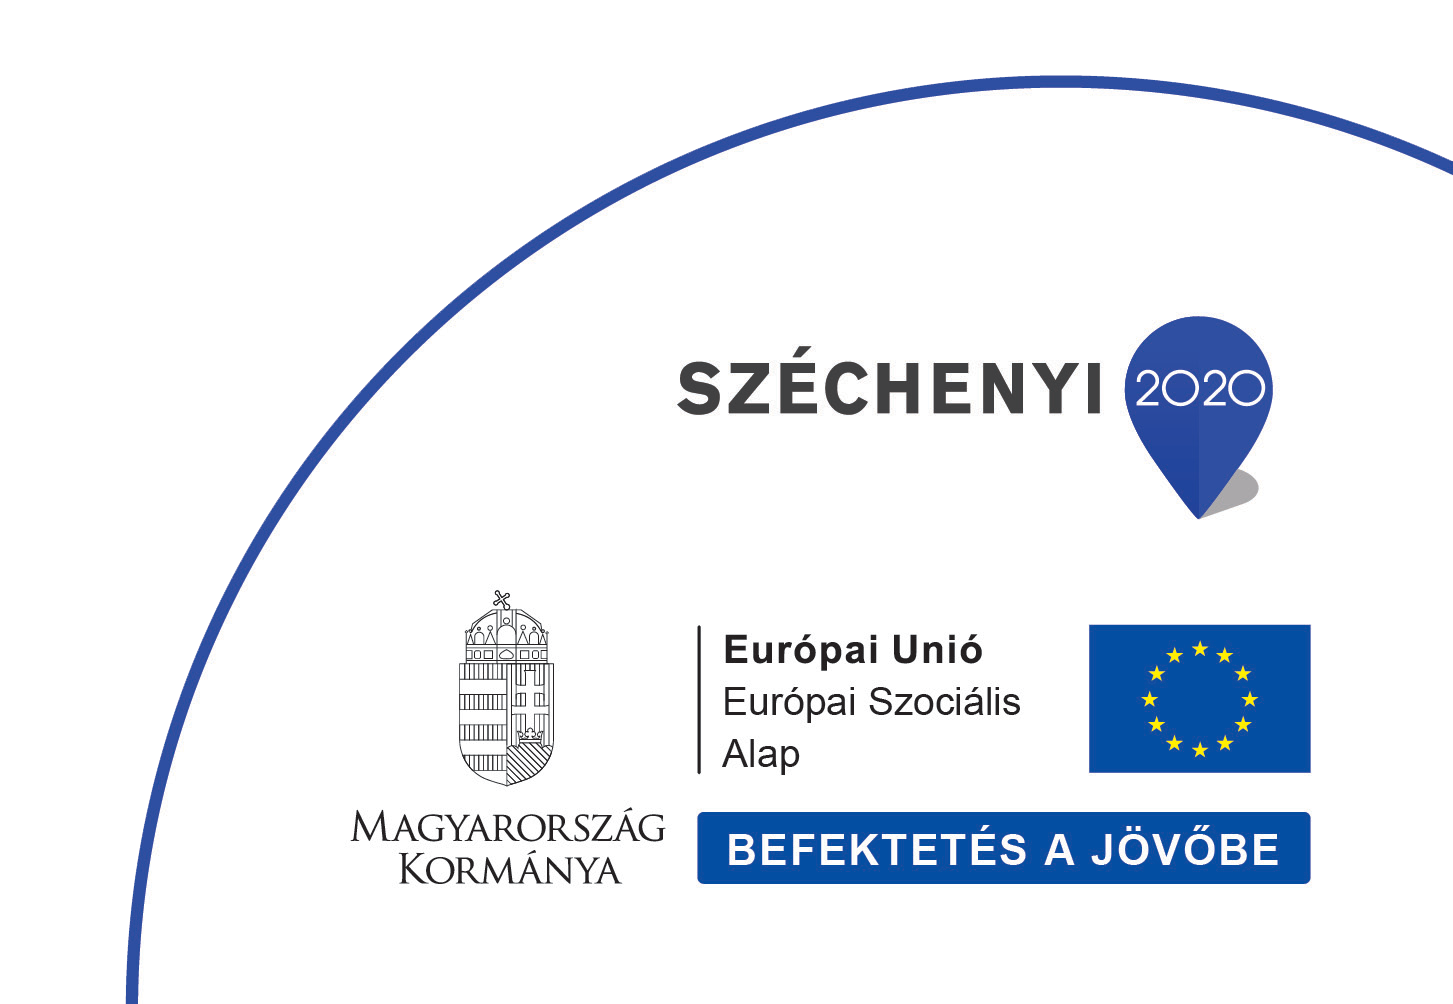 Szécehnyi2020-Az MVGYOSZ konzorciumi partnere a Siketek és Nagyothallók Országos Szövetsége